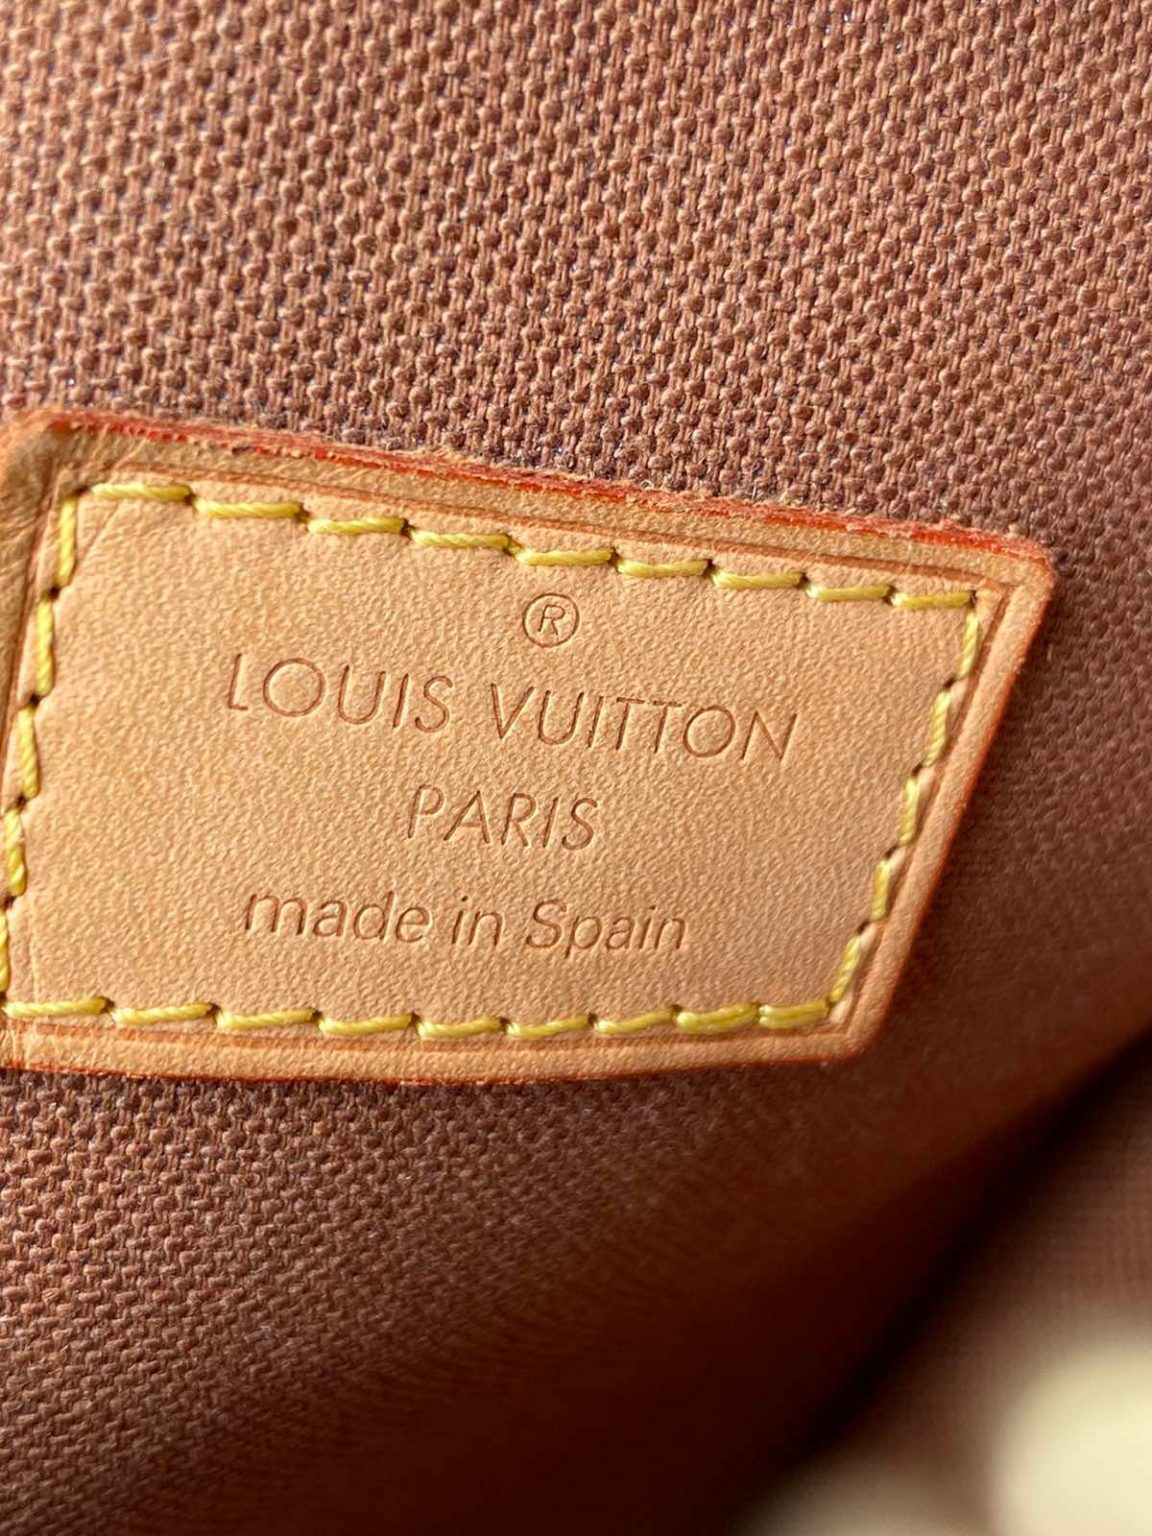 Louis Vuitton Victoire Monogram Canvas Bag 9700